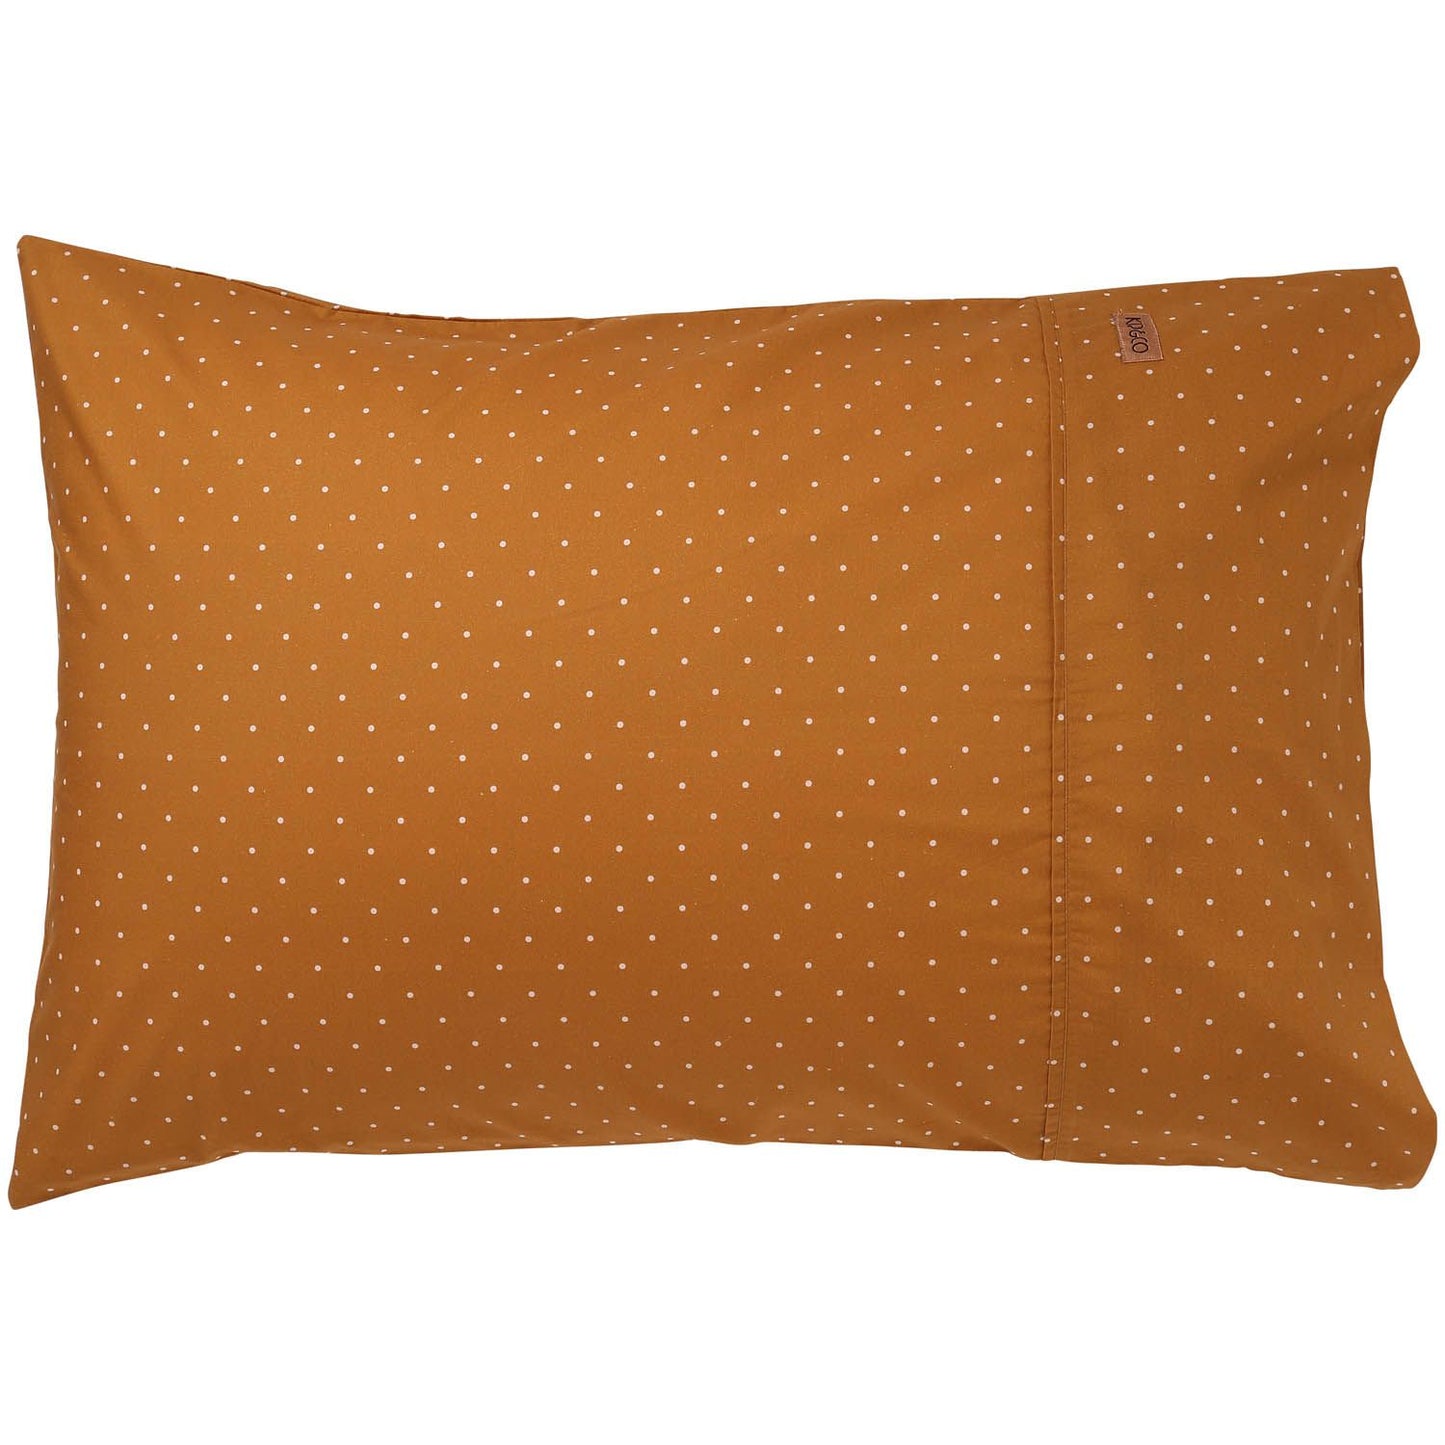 Teeny Weeny Dots pillowcase set . Cotton